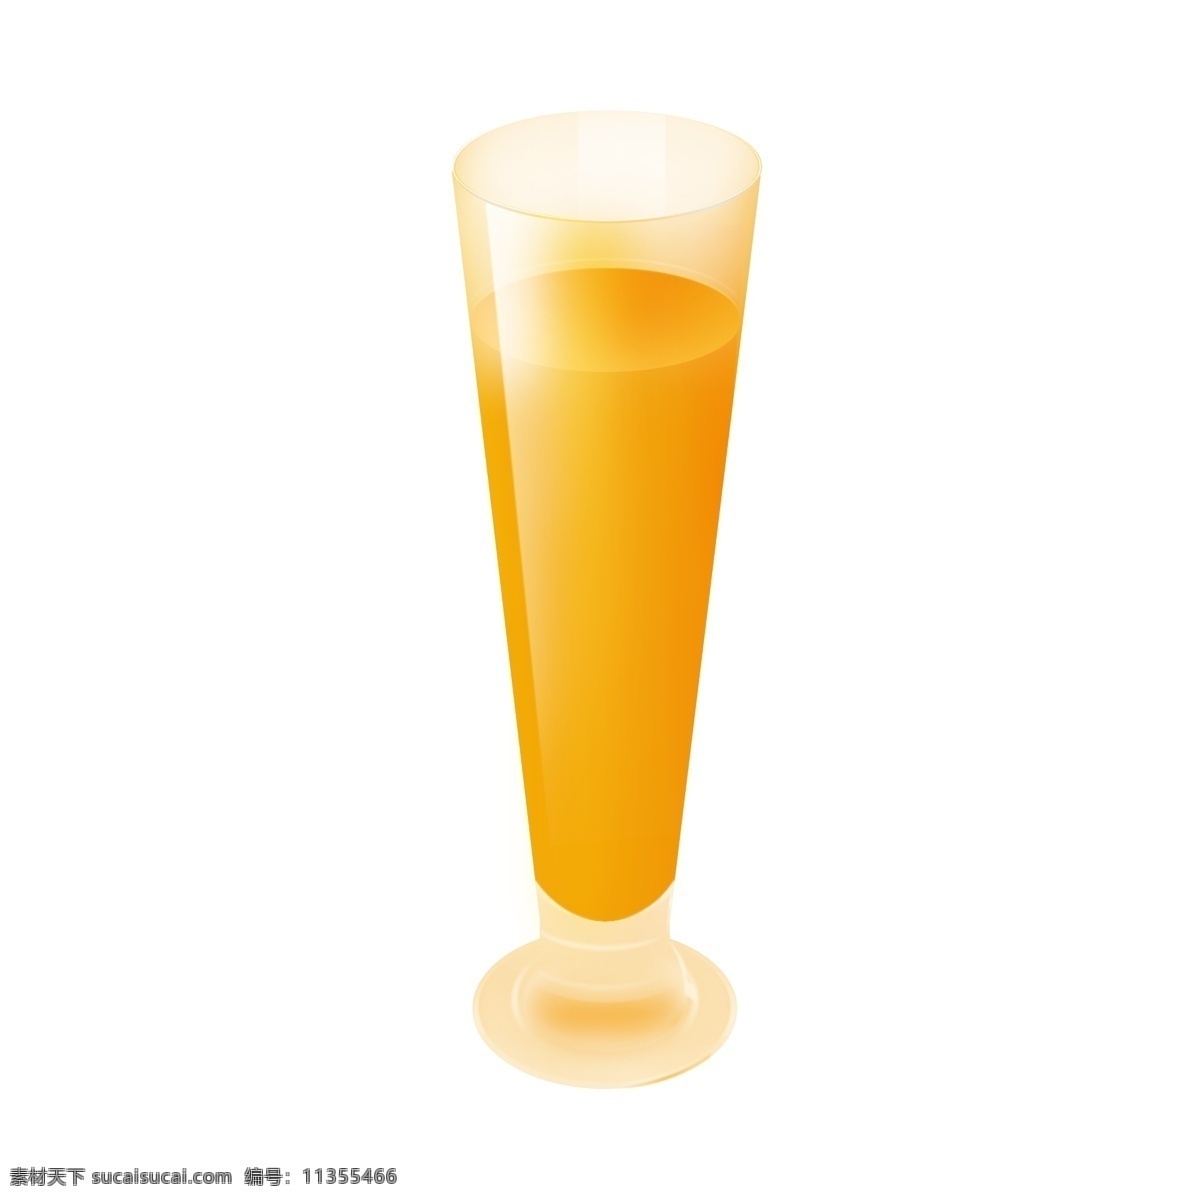 果汁 橙汁 长脚 玻璃杯 金黄色 长杯 竖杯 大杯 金黄色果汁 满满果汁 满满橙汁 大杯果汁 大杯橙汁